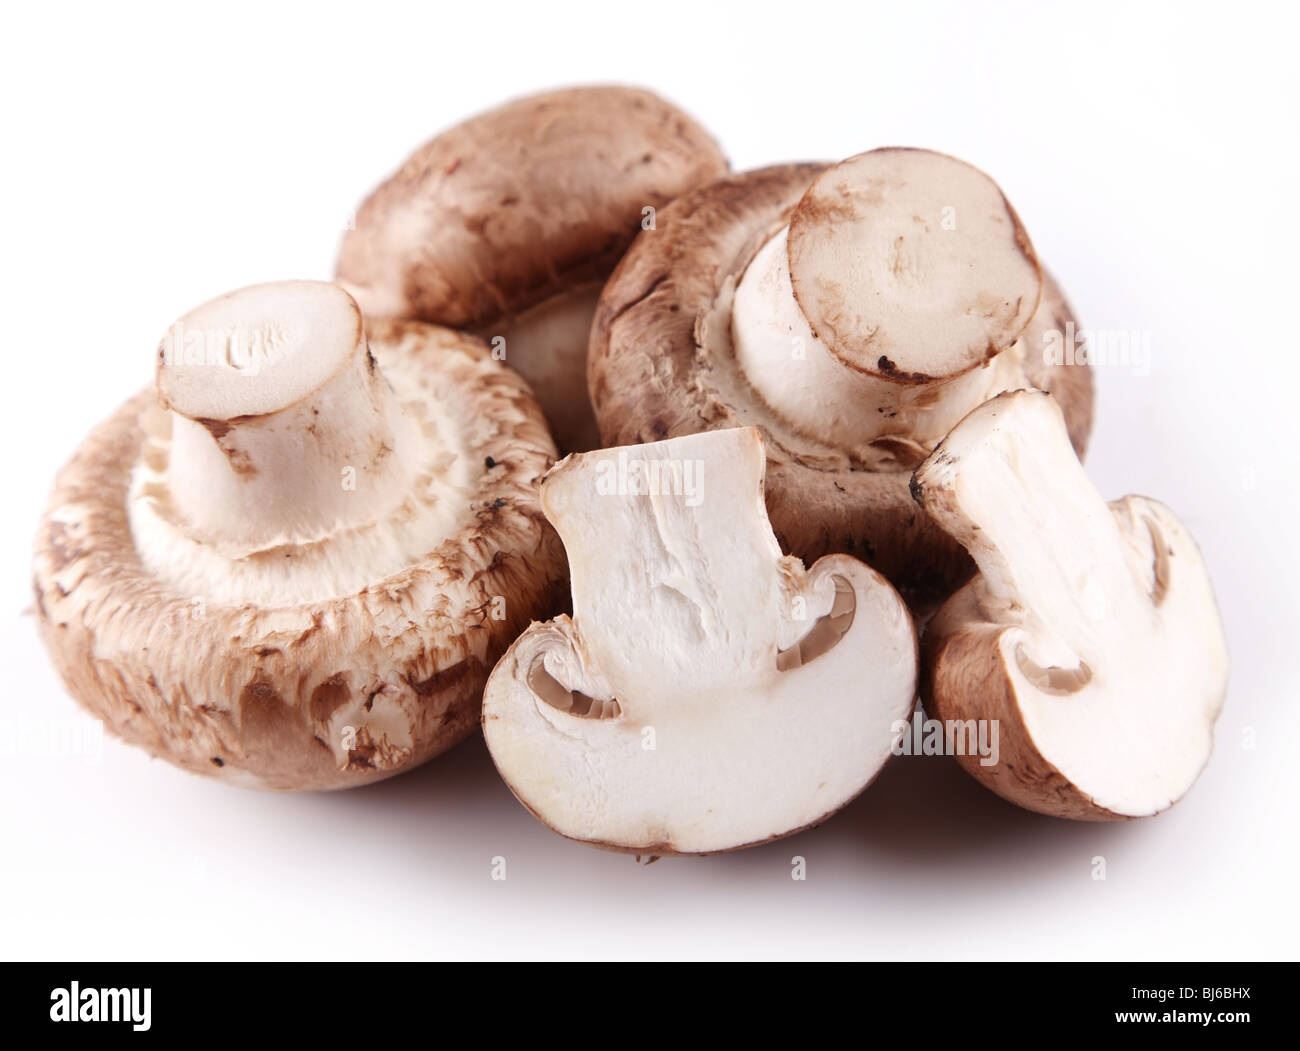 Funghi champignon reale su sfondo bianco Foto Stock